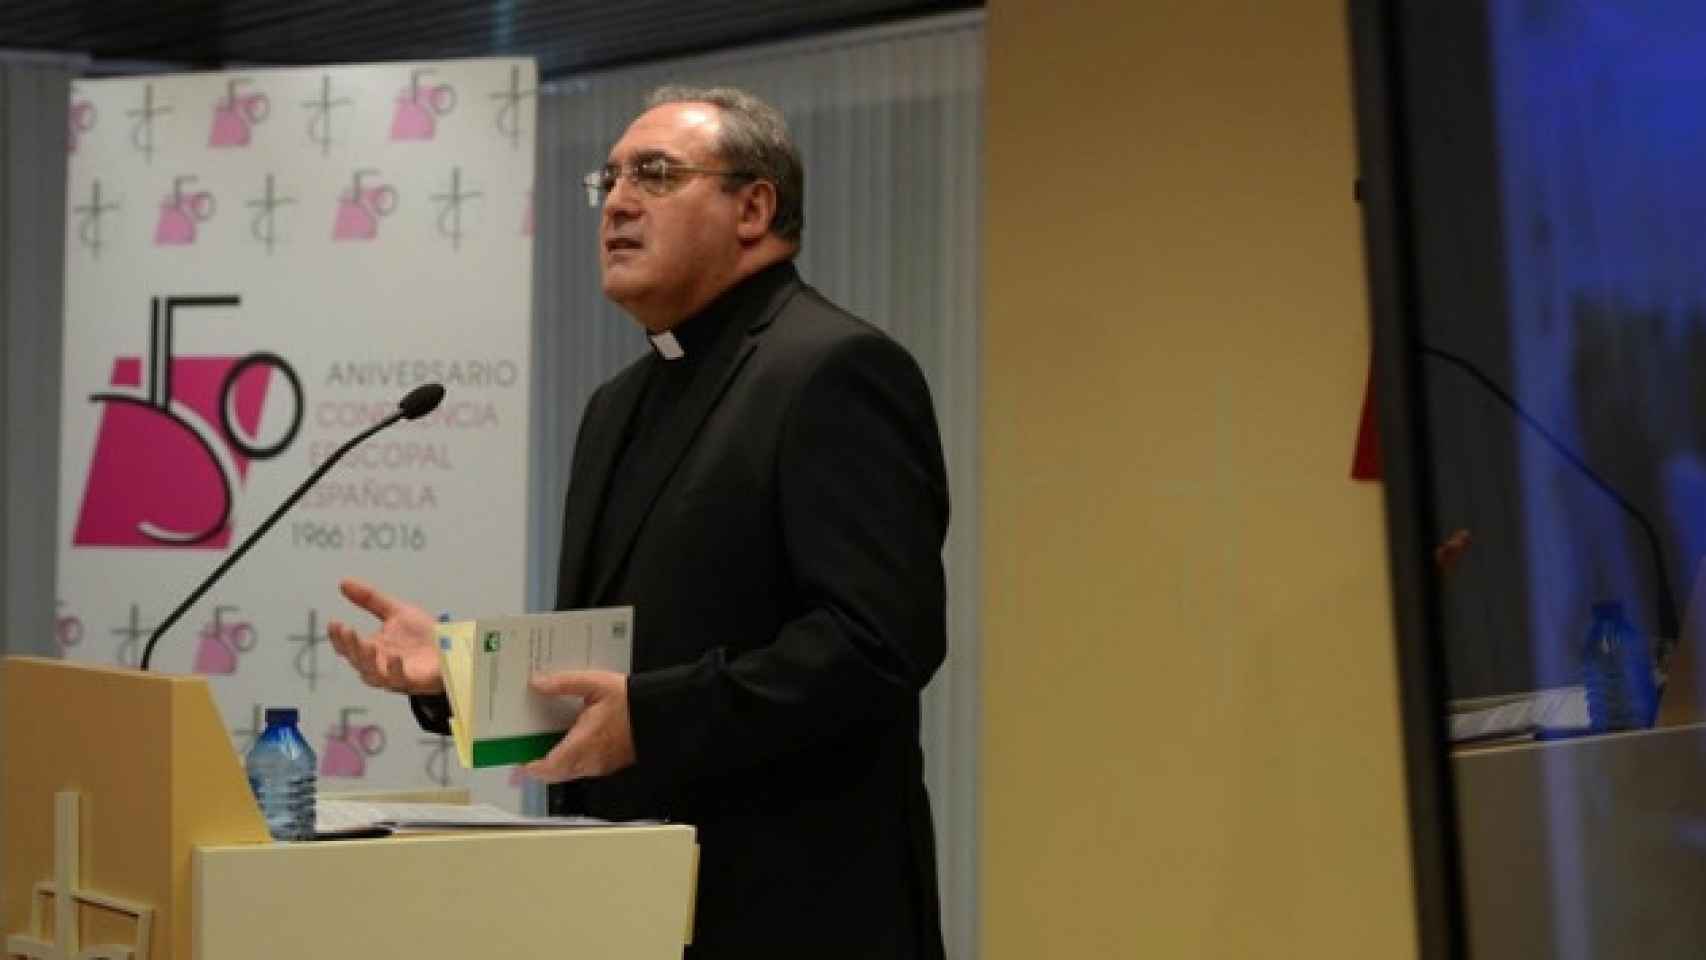 El portavoz y secretario general de la Conferencia Episcopal Española (CEE), José María Gil Tamayo